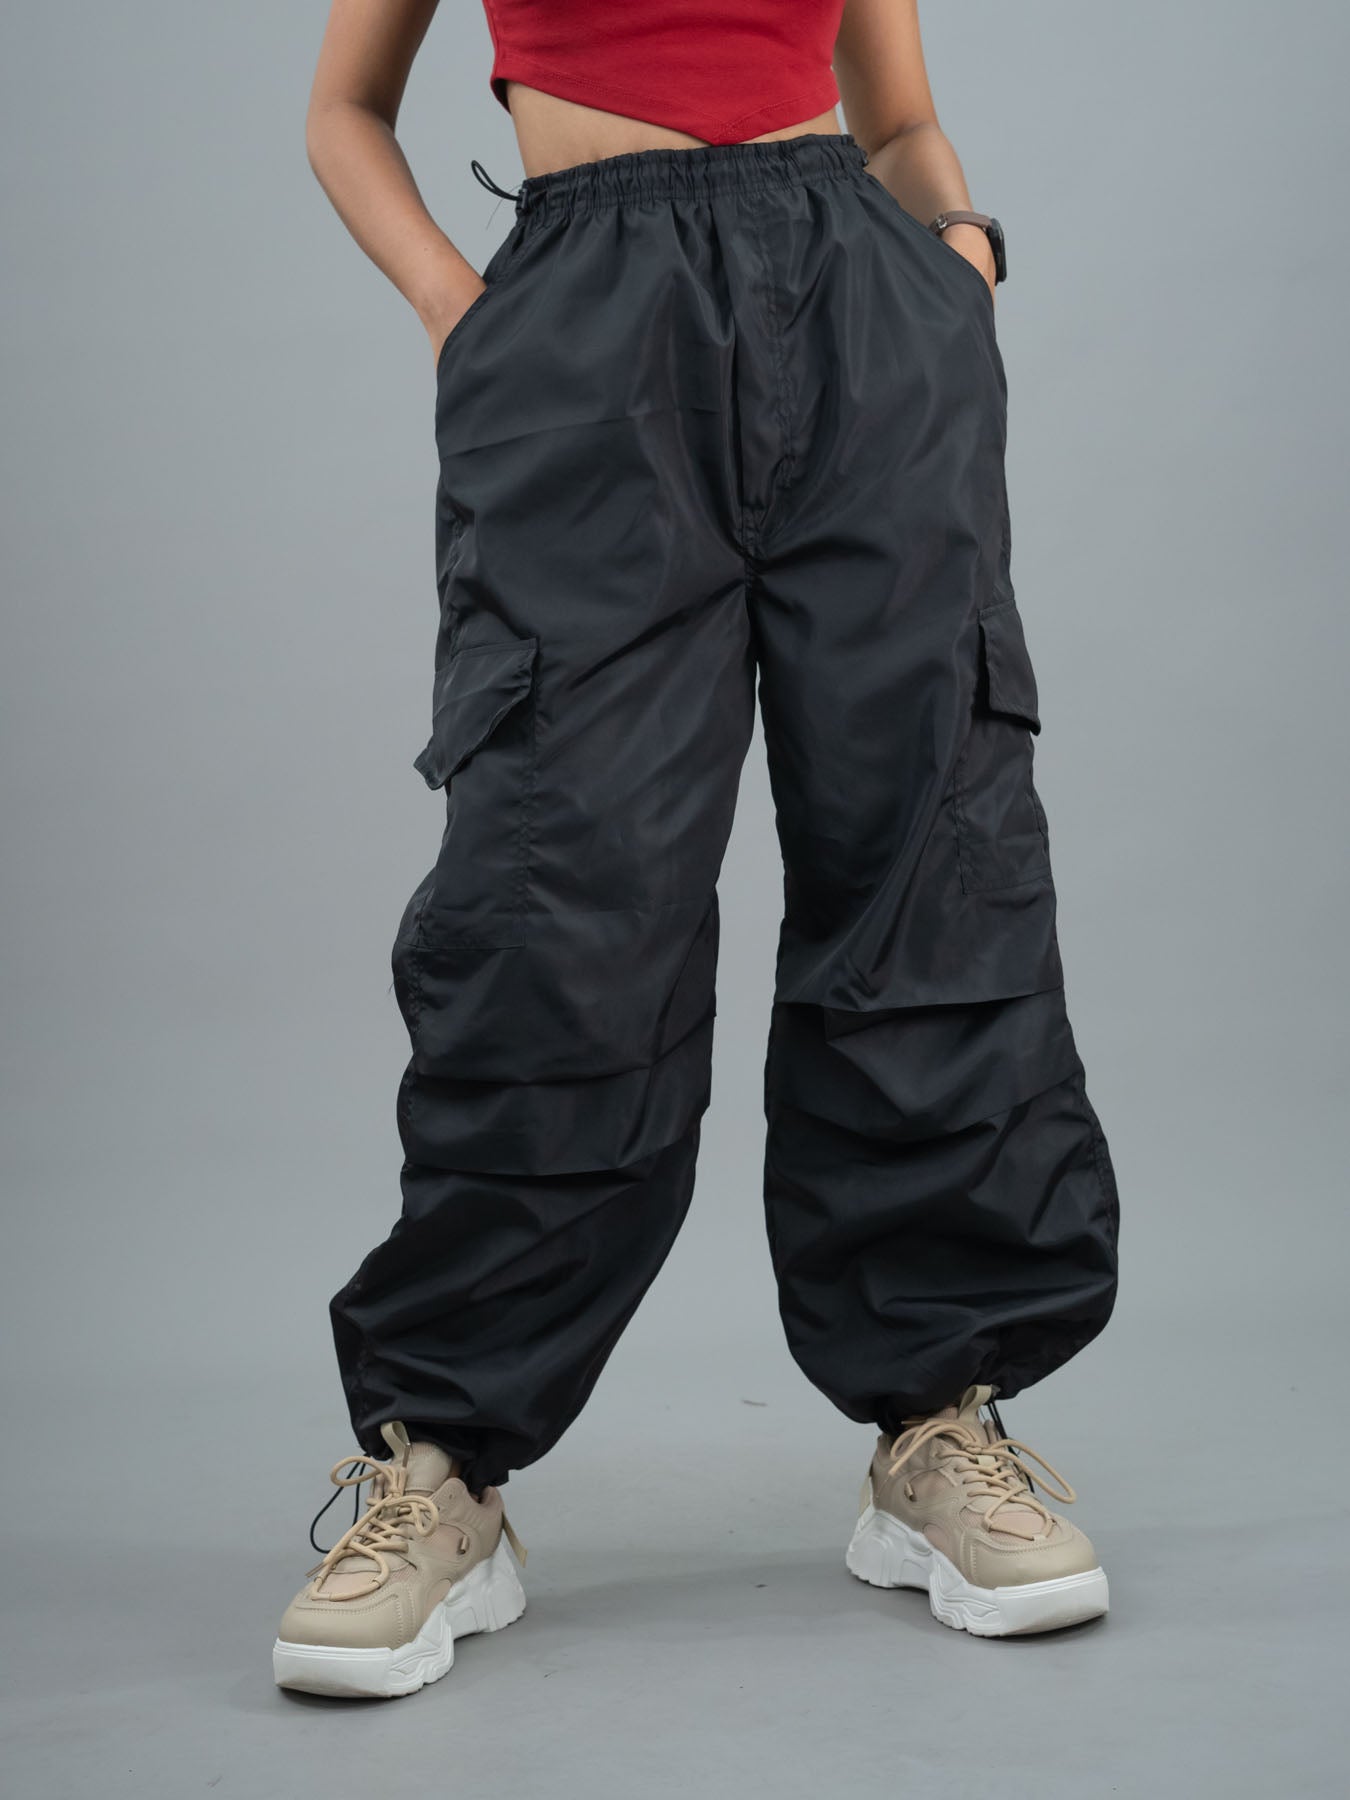 parachute pants - Parachute Pants for women - women's cargos pant